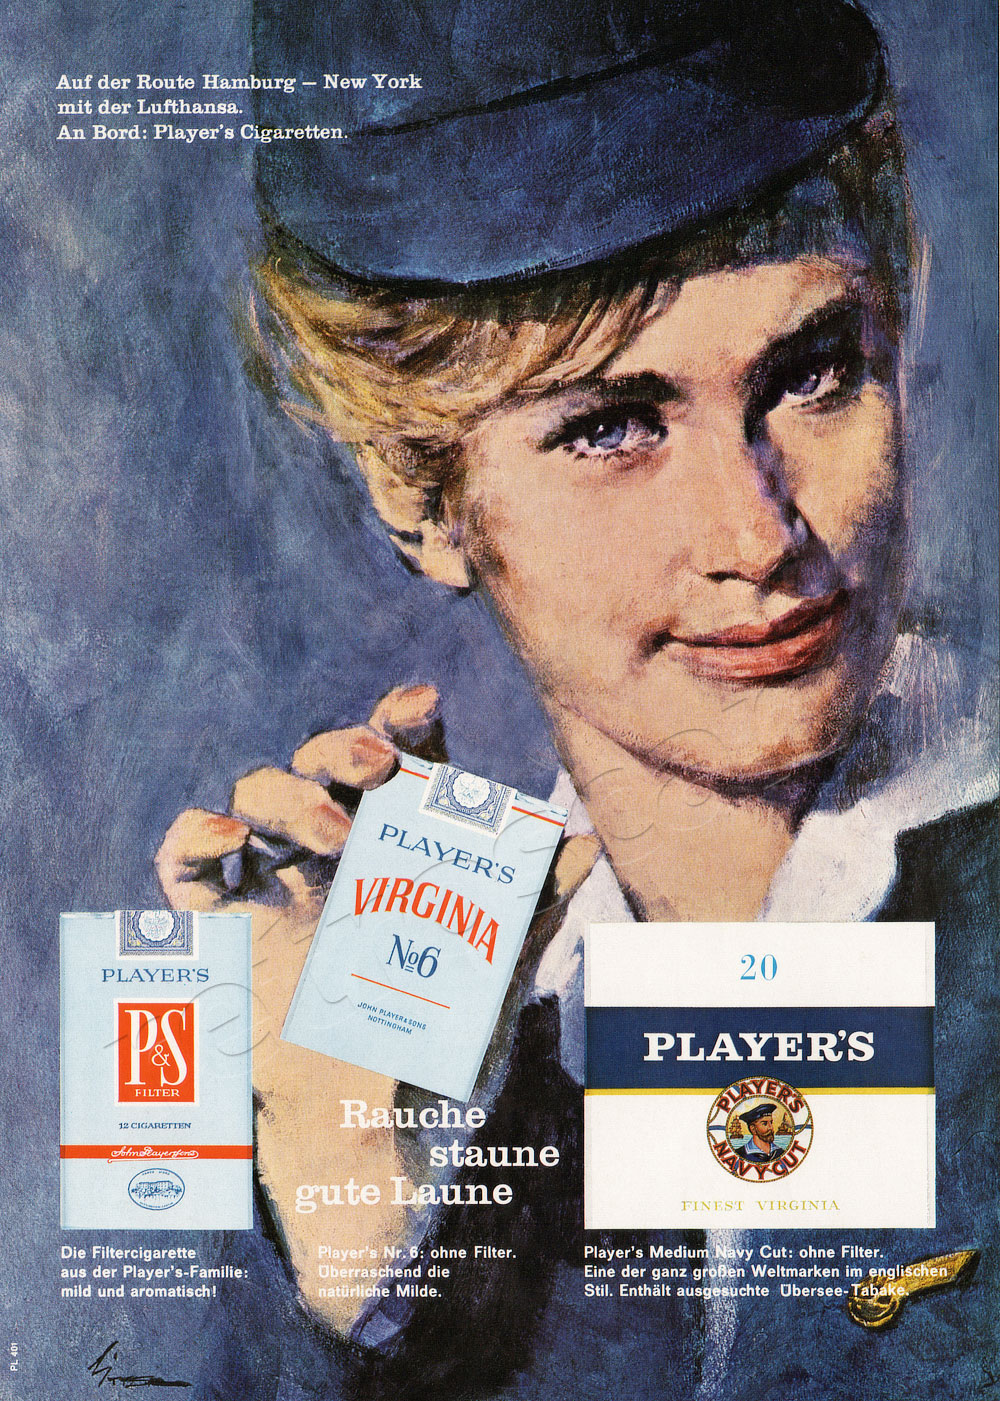 1964 Player's Cigarettes - unframed vintage ad